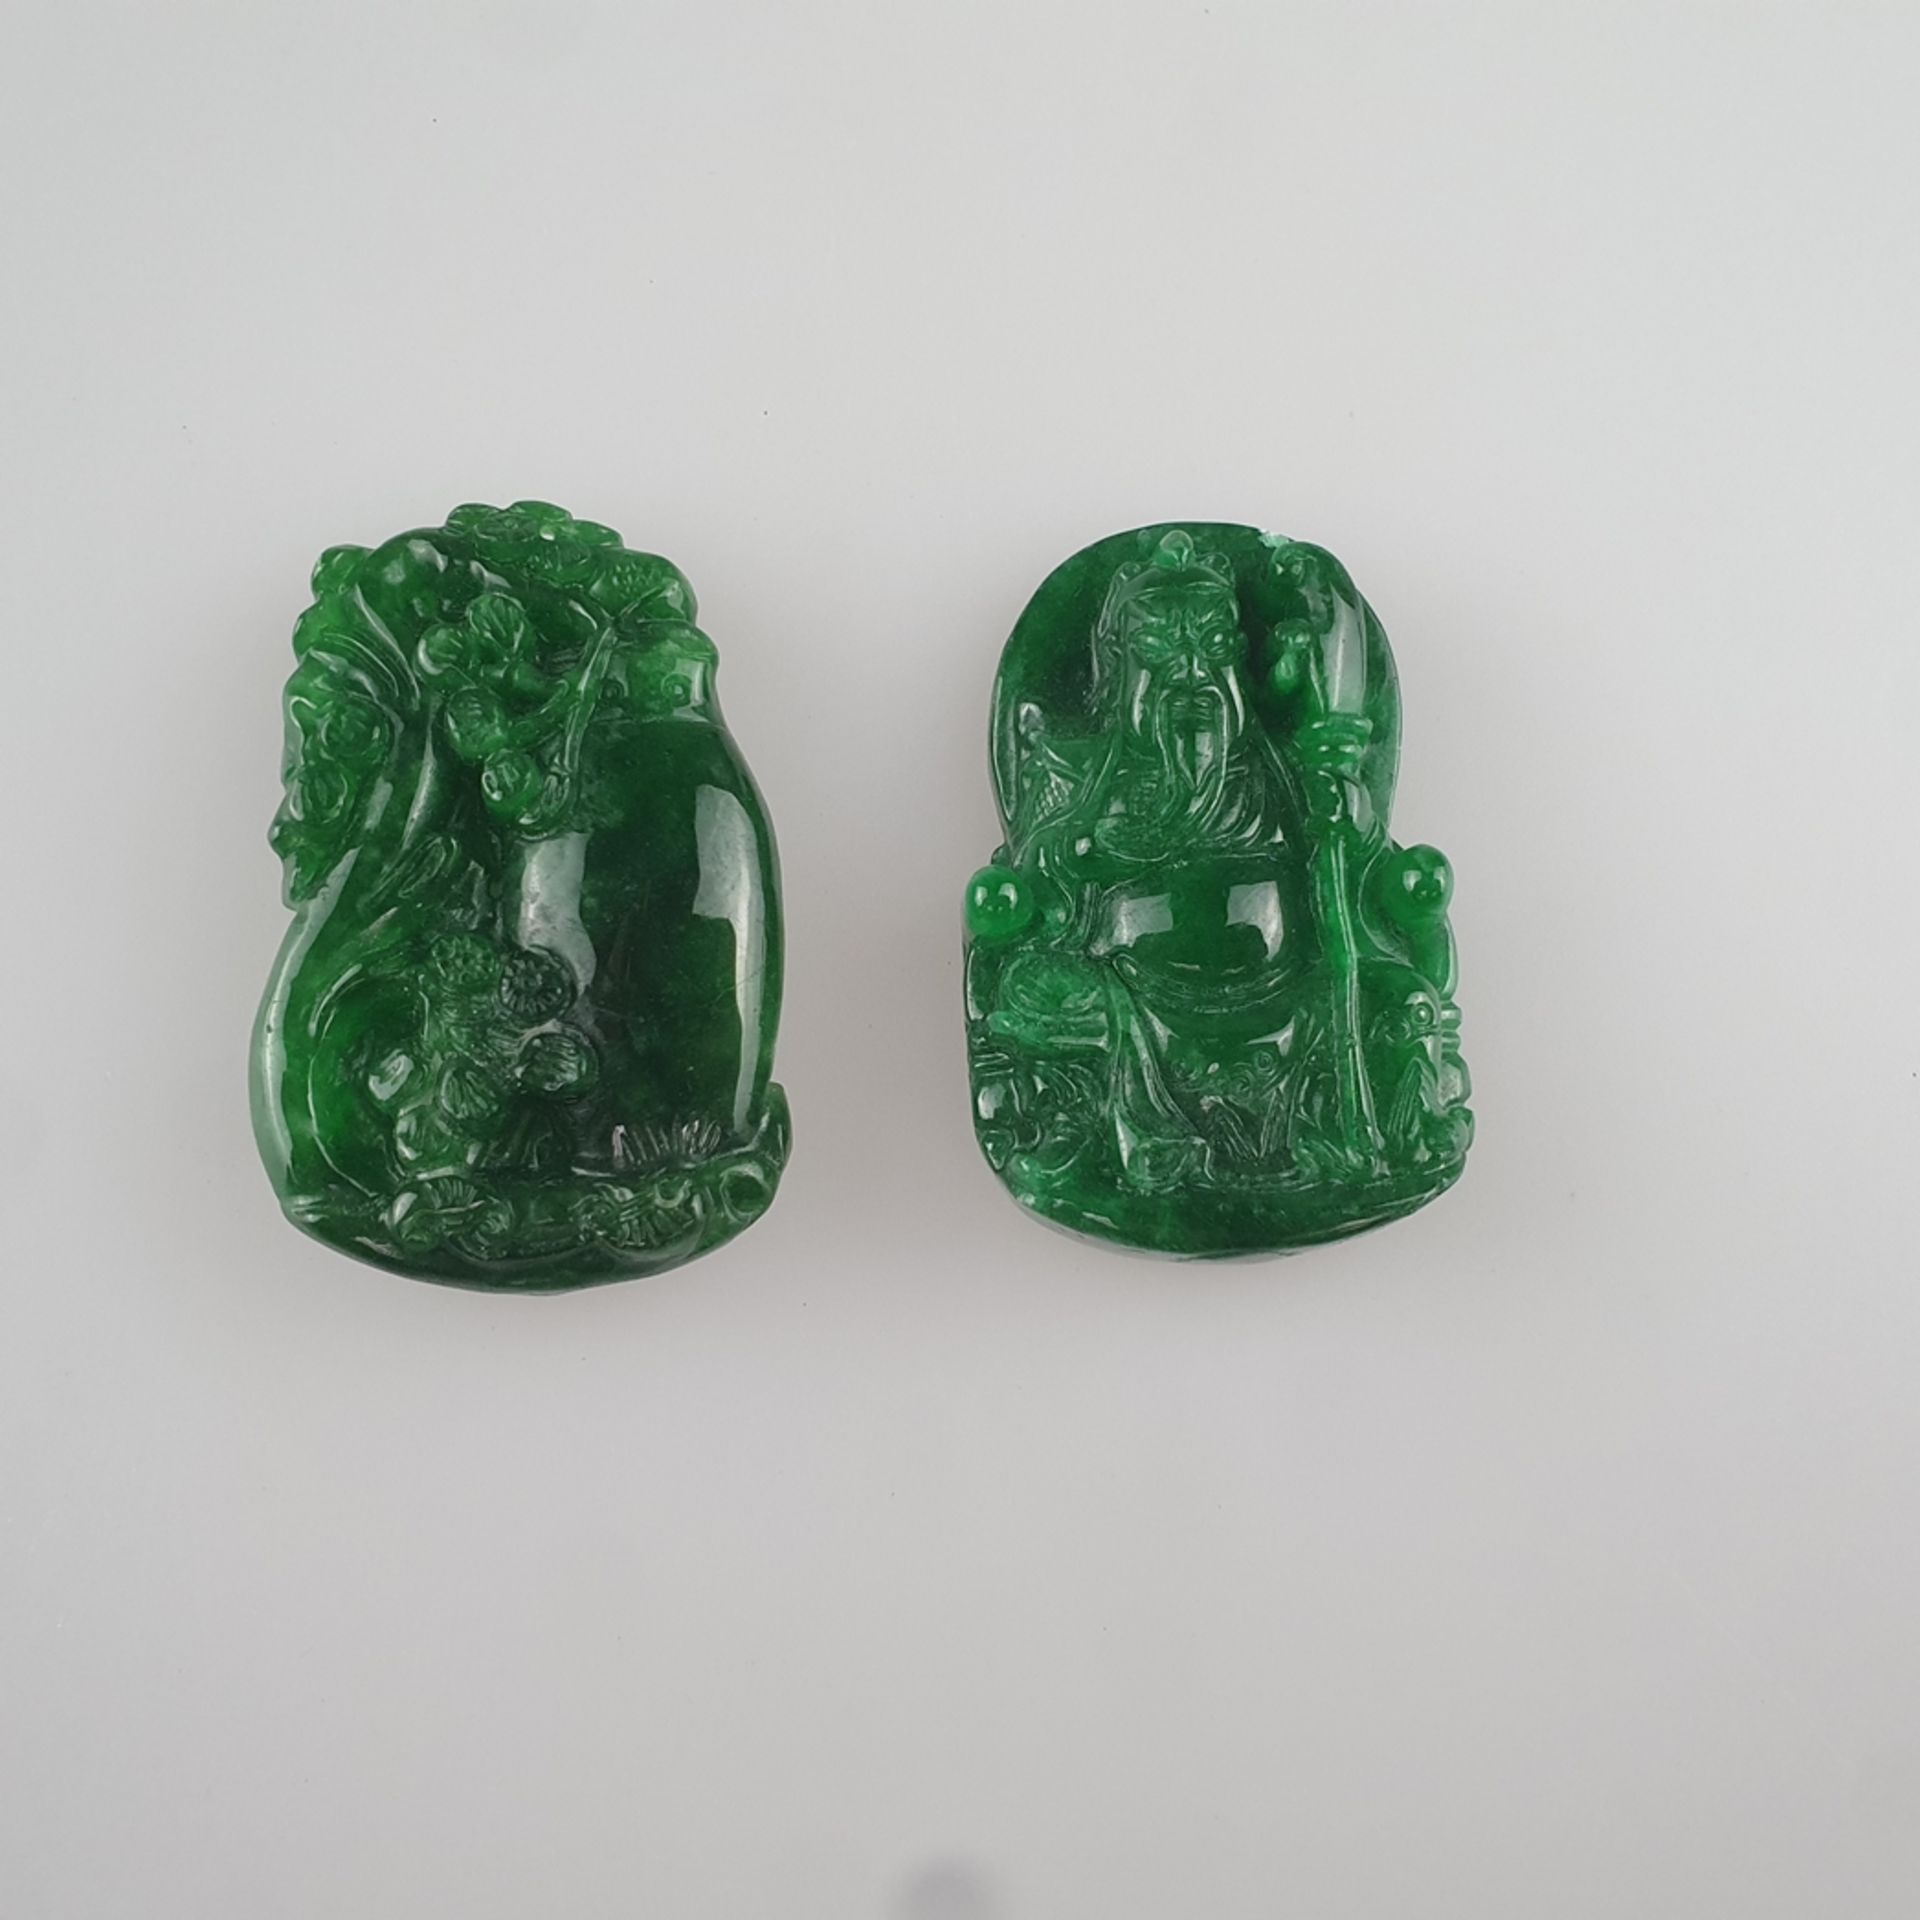 Zwei Jadeplaketten - China, filigran geschnitzte Jade, fein poliert, 1x Darstellung des thronenden 